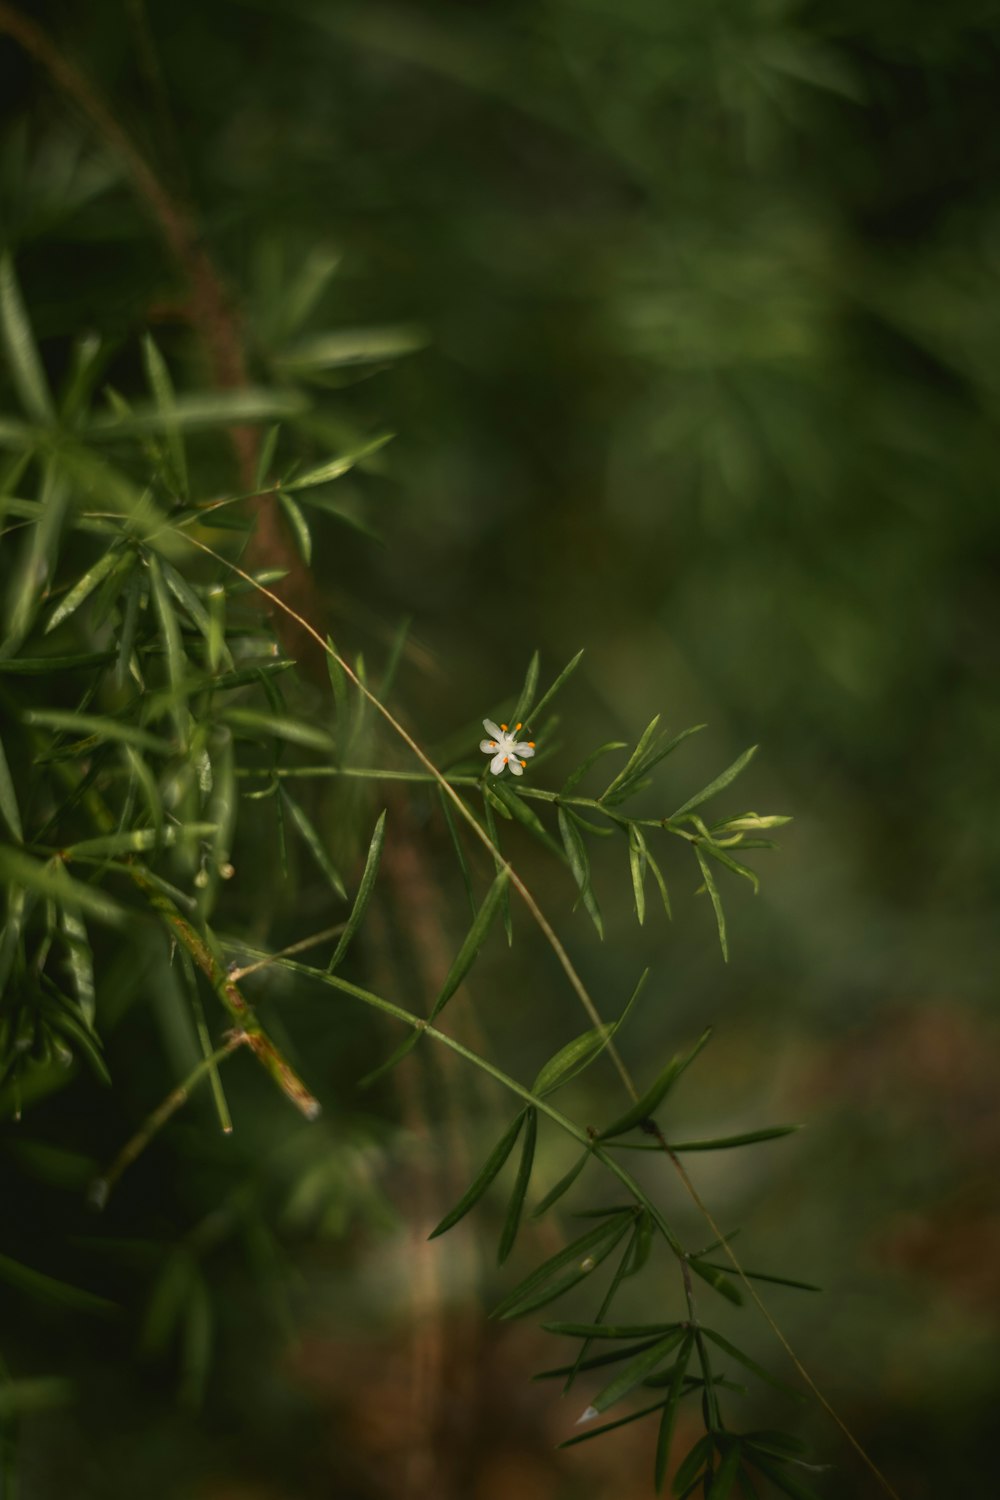 eine weiße Blume auf einer grünen Pflanze